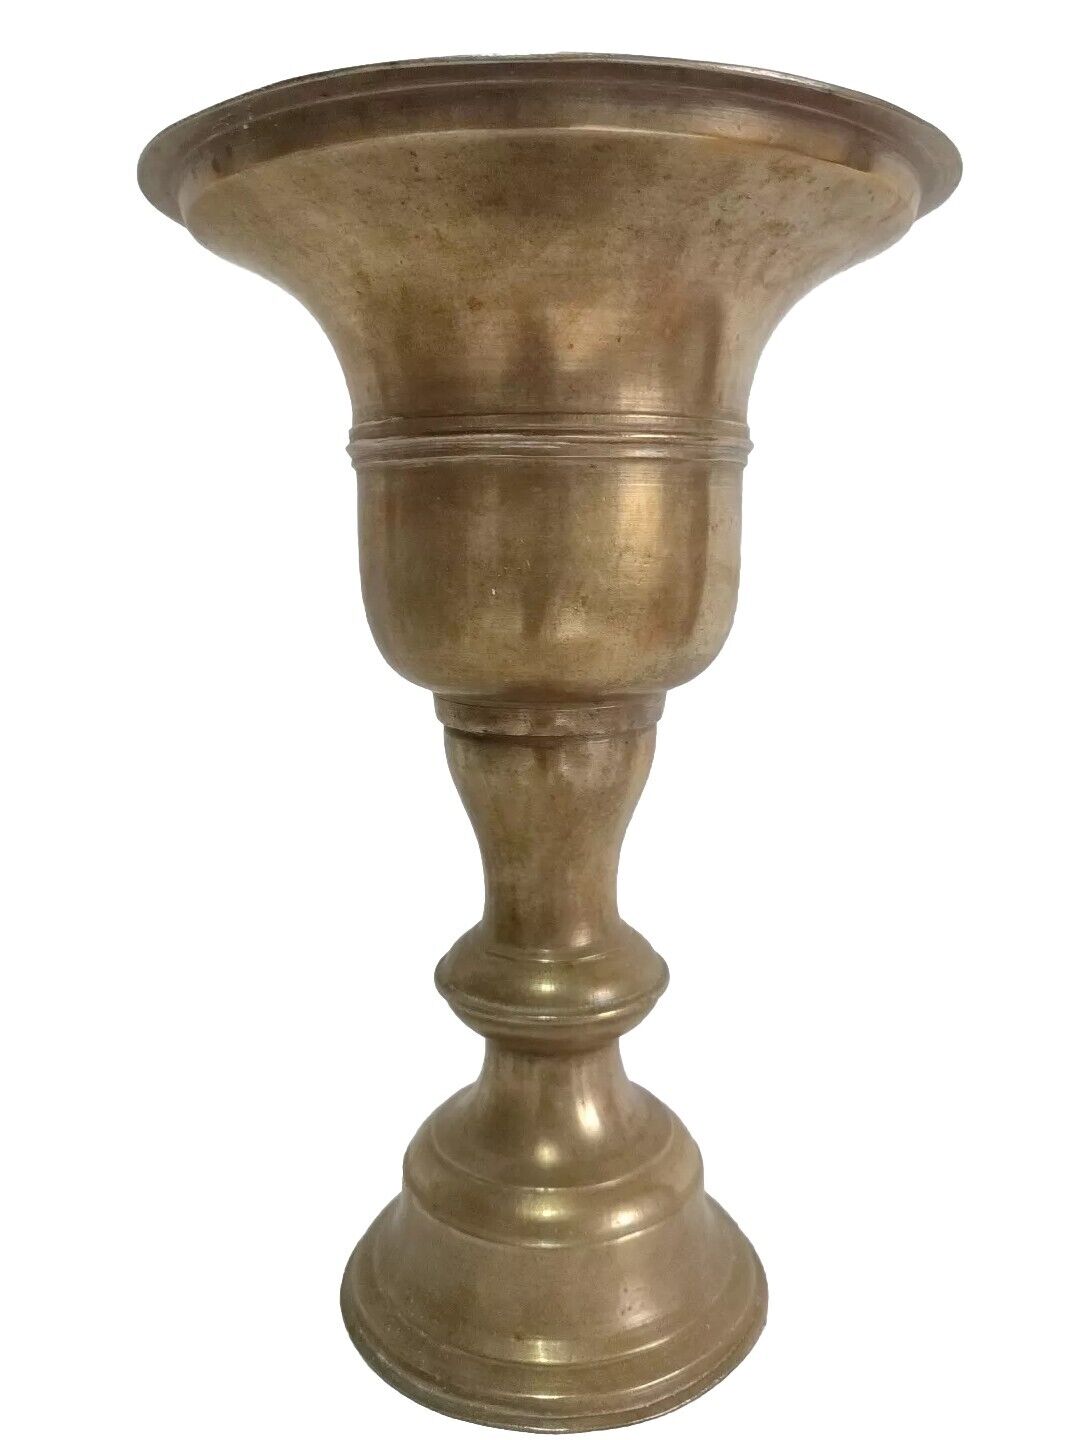 Vintage Heavy Brass Spittoon Indoor Planter Vase Antique Home Decor Vessel 2400g